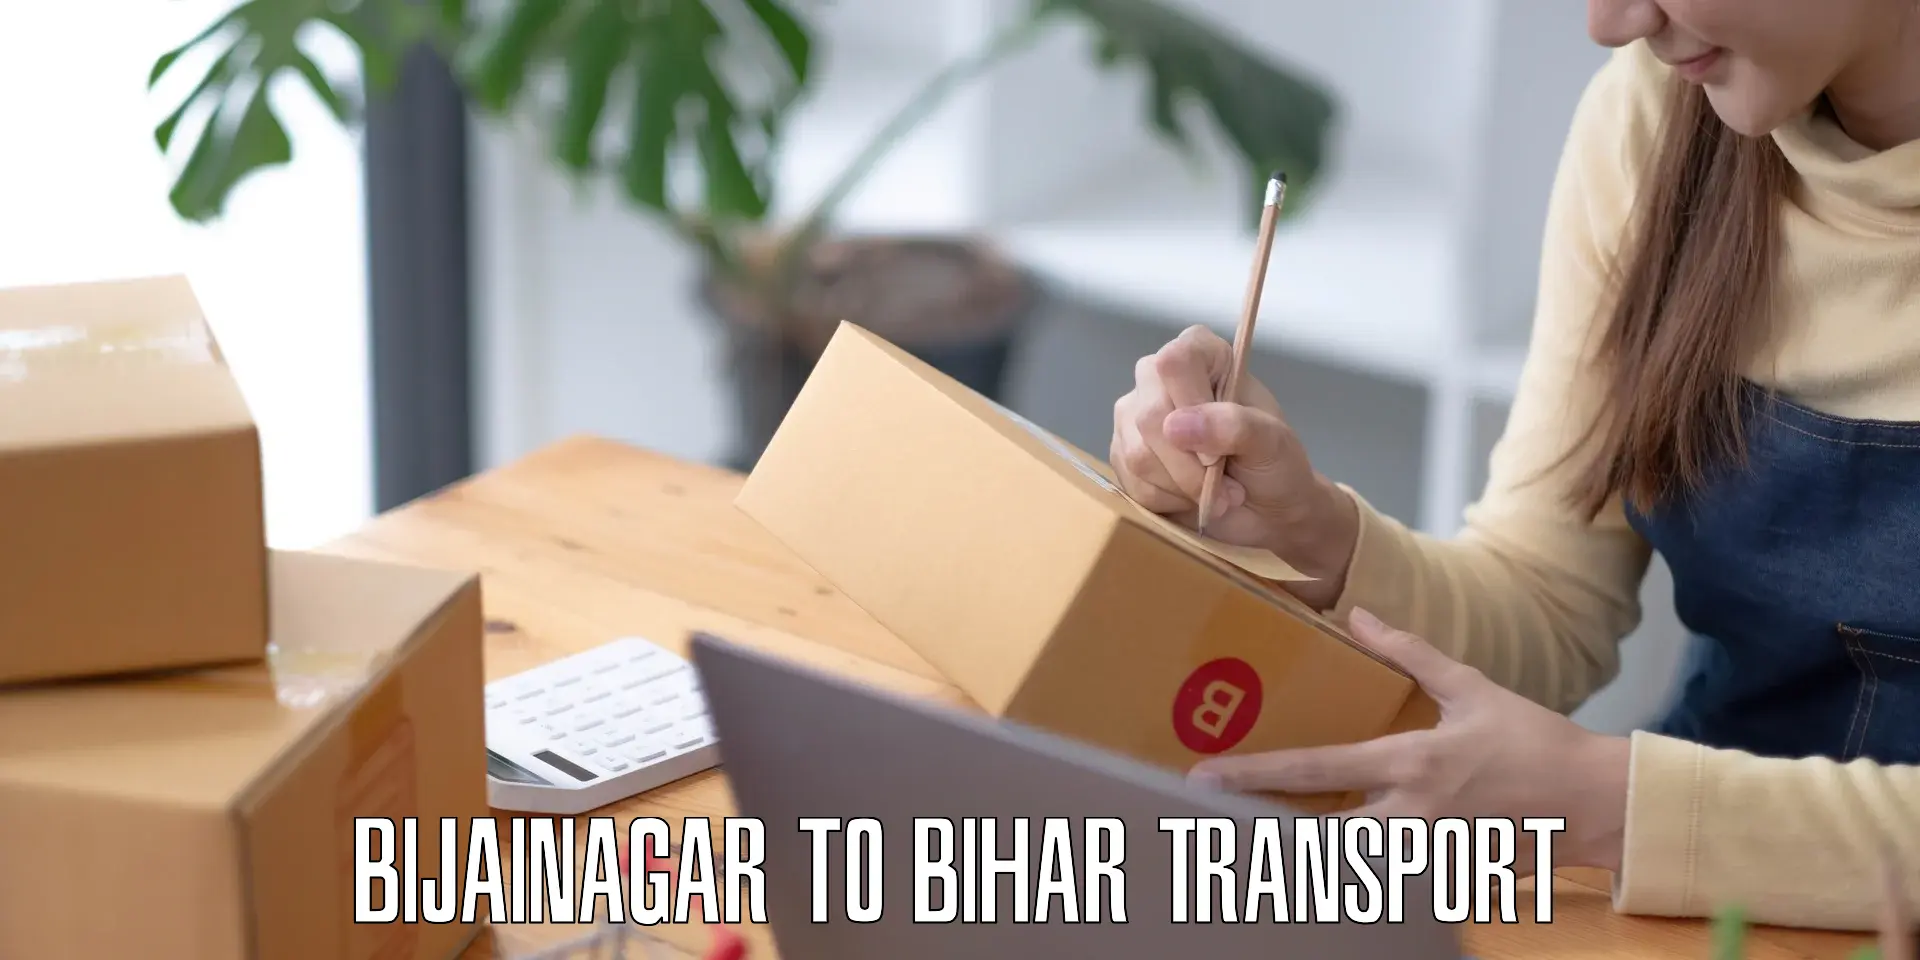 Daily transport service Bijainagar to Araria